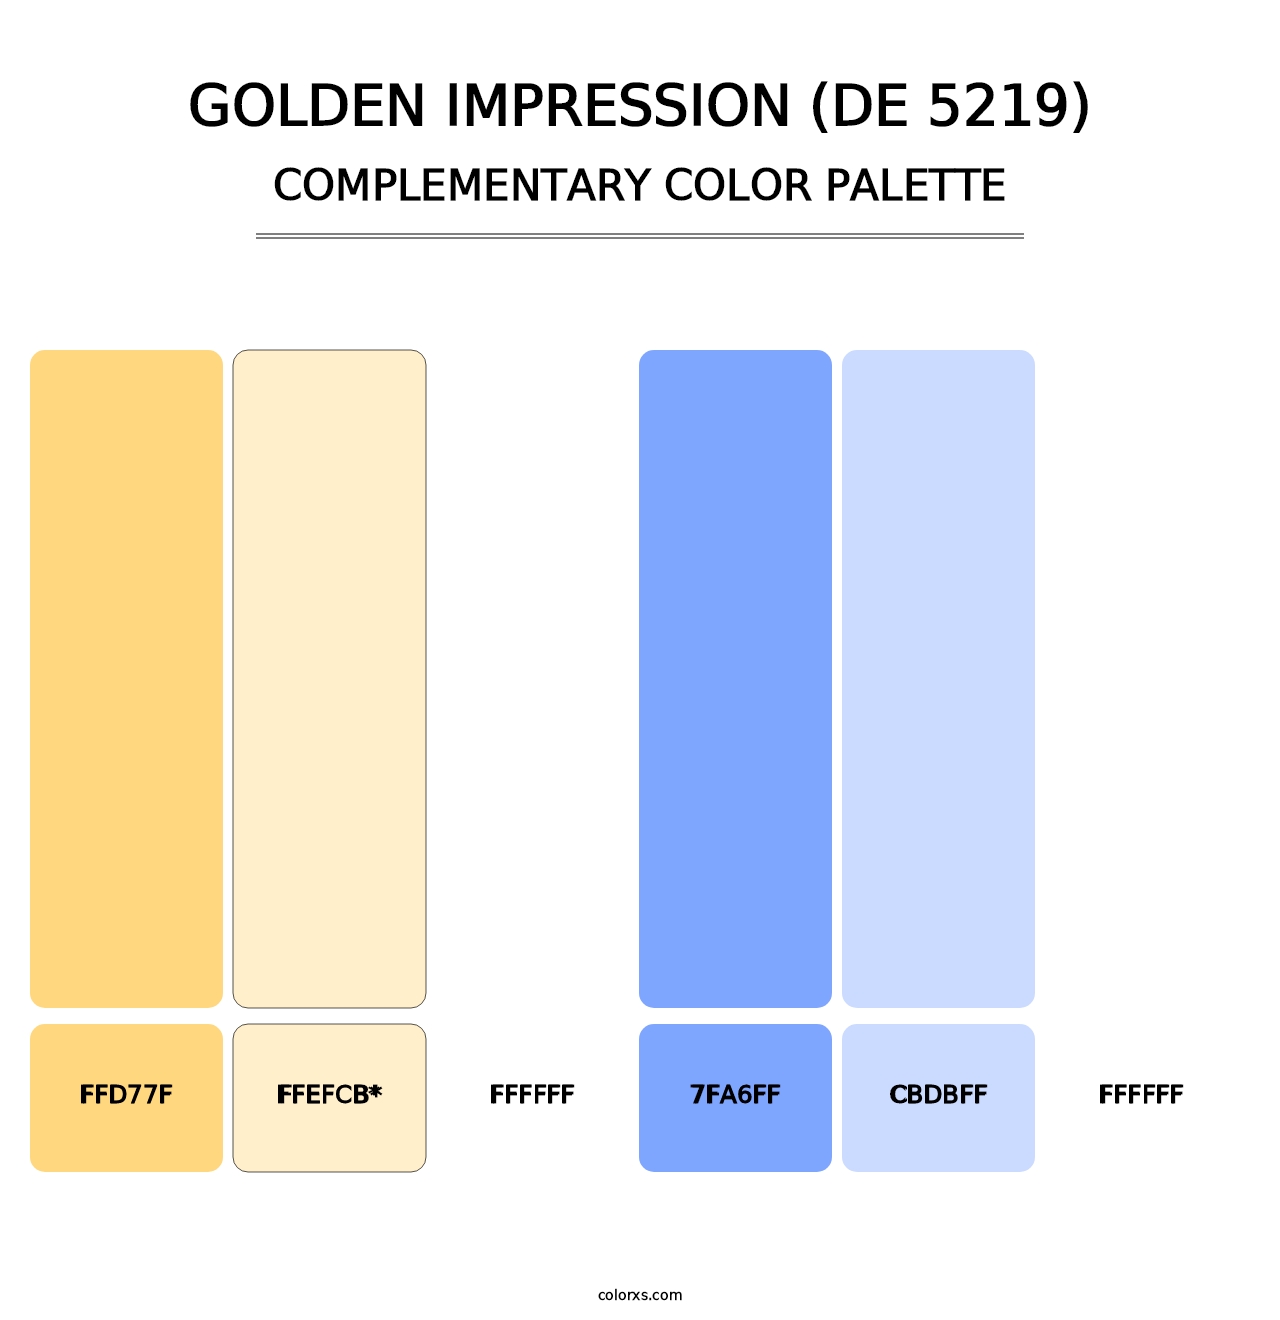 Golden Impression (DE 5219) - Complementary Color Palette